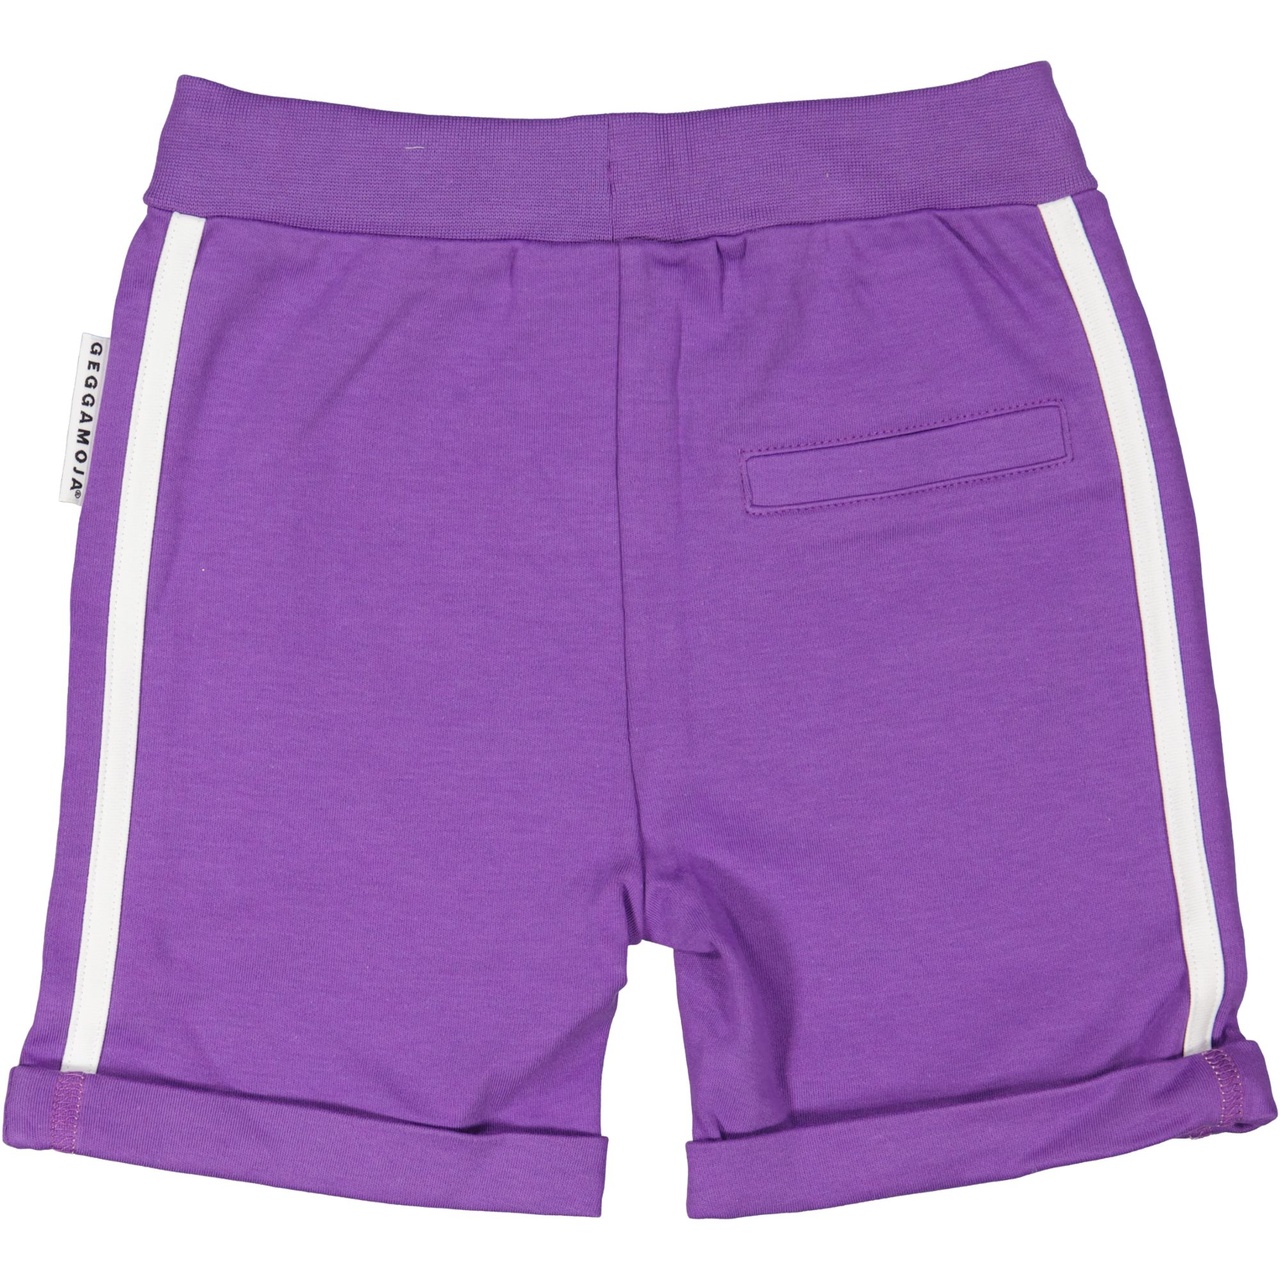 Sweat shorts Purple 05 122/128